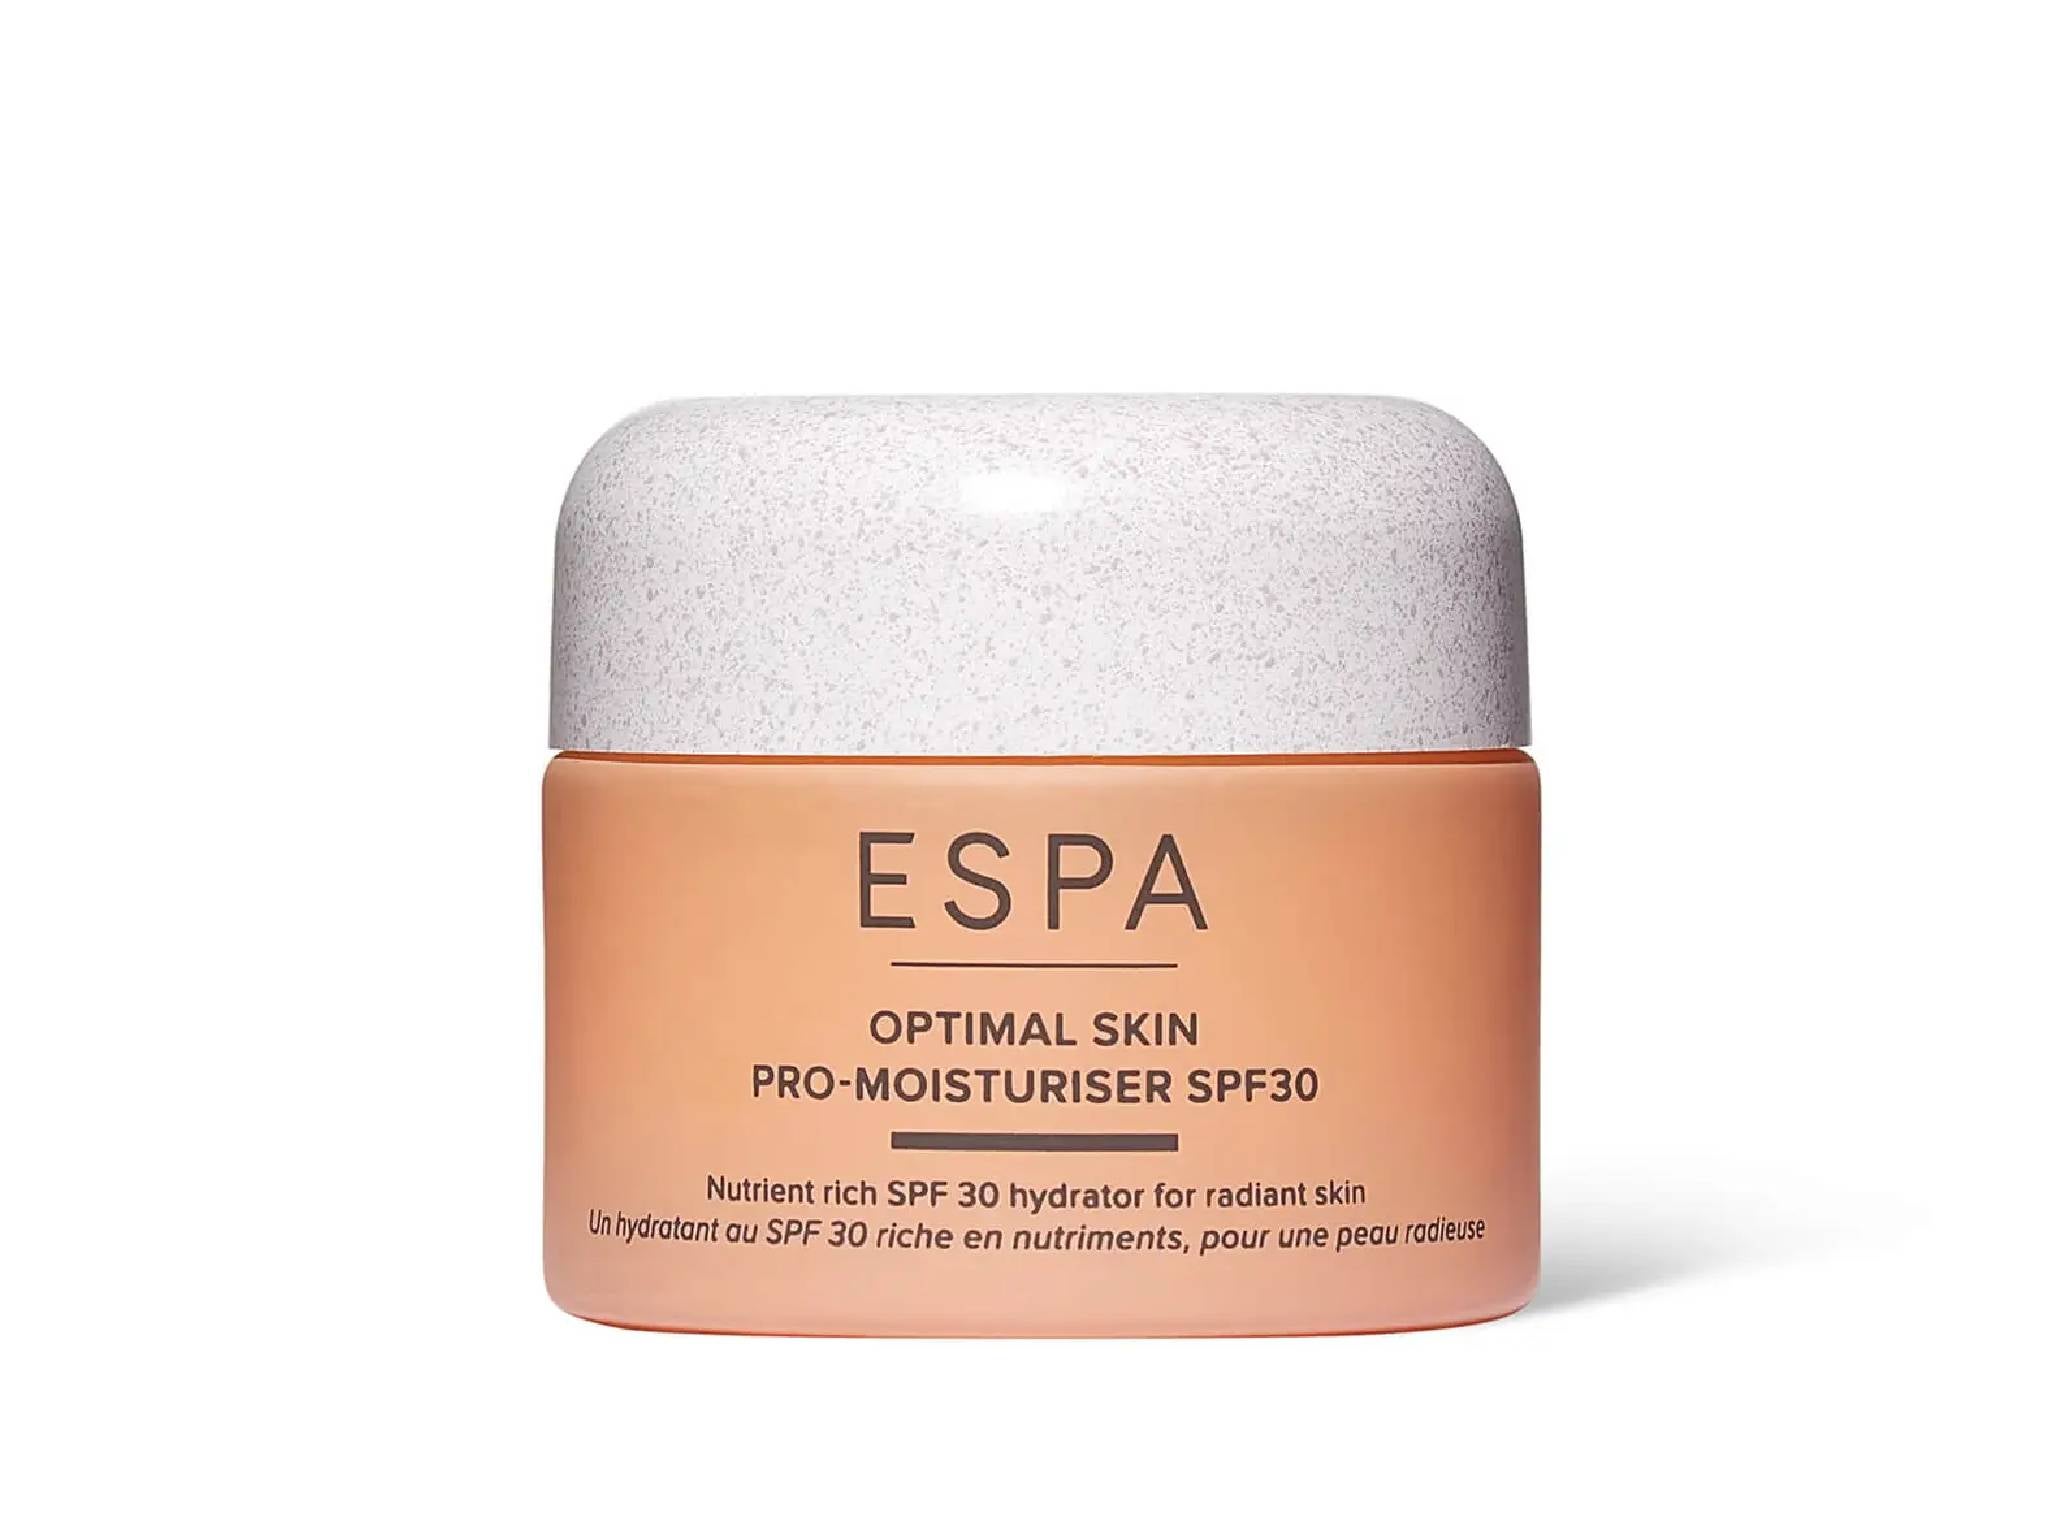 ESPA optimal skin pro-moisturiser SPF30 